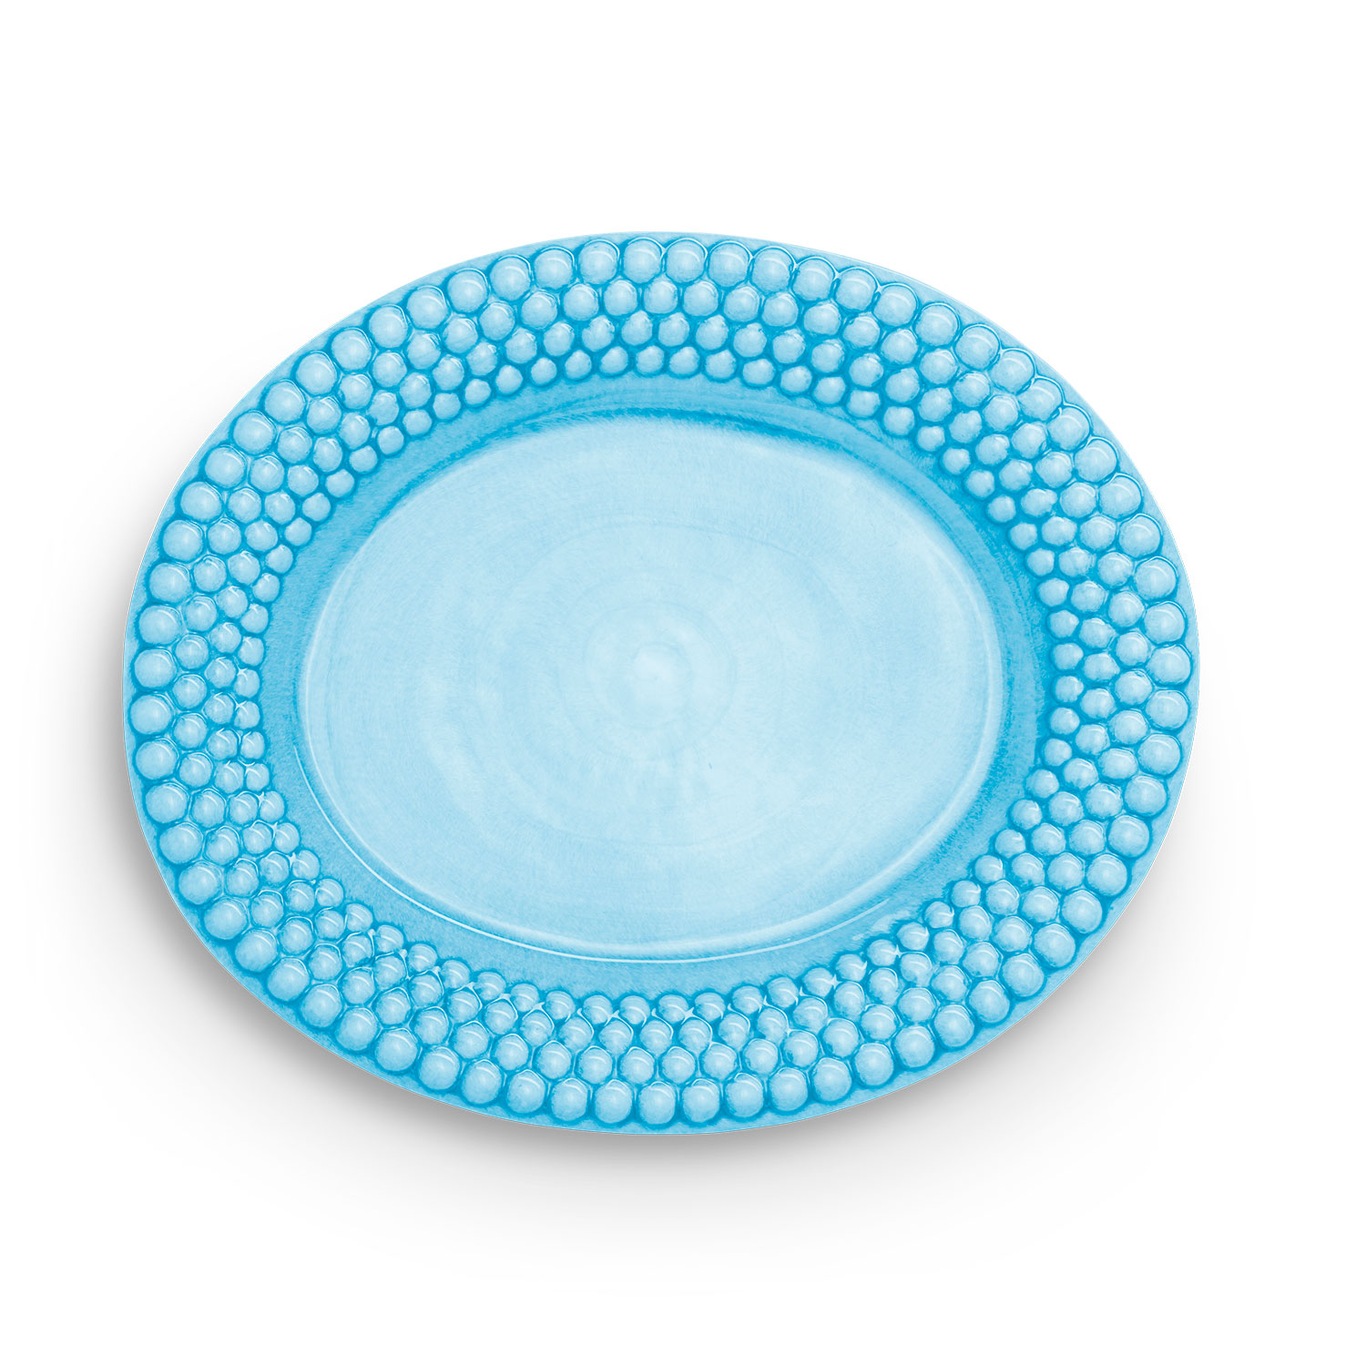 Bubbles Platter Oval 35 cm, Turquoise